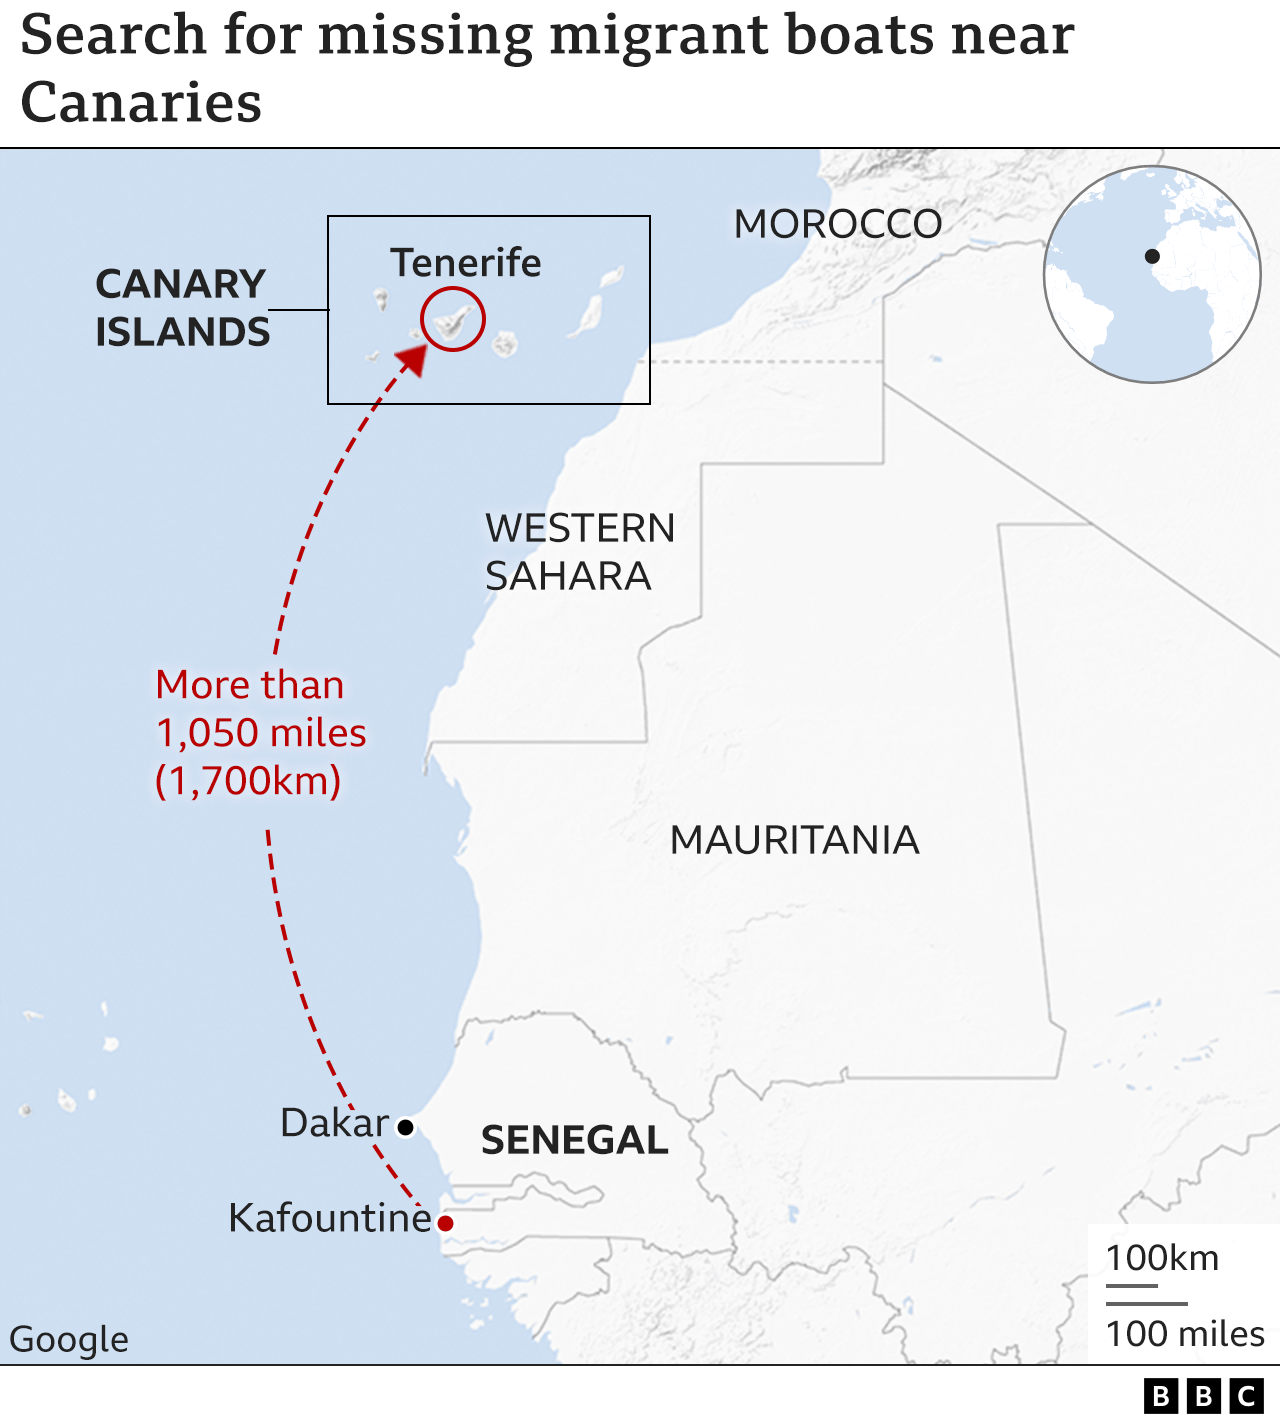 Карта показывает западное побережье Африки и Канарские острова, где идет поиск пропавших лодок с мигрантами